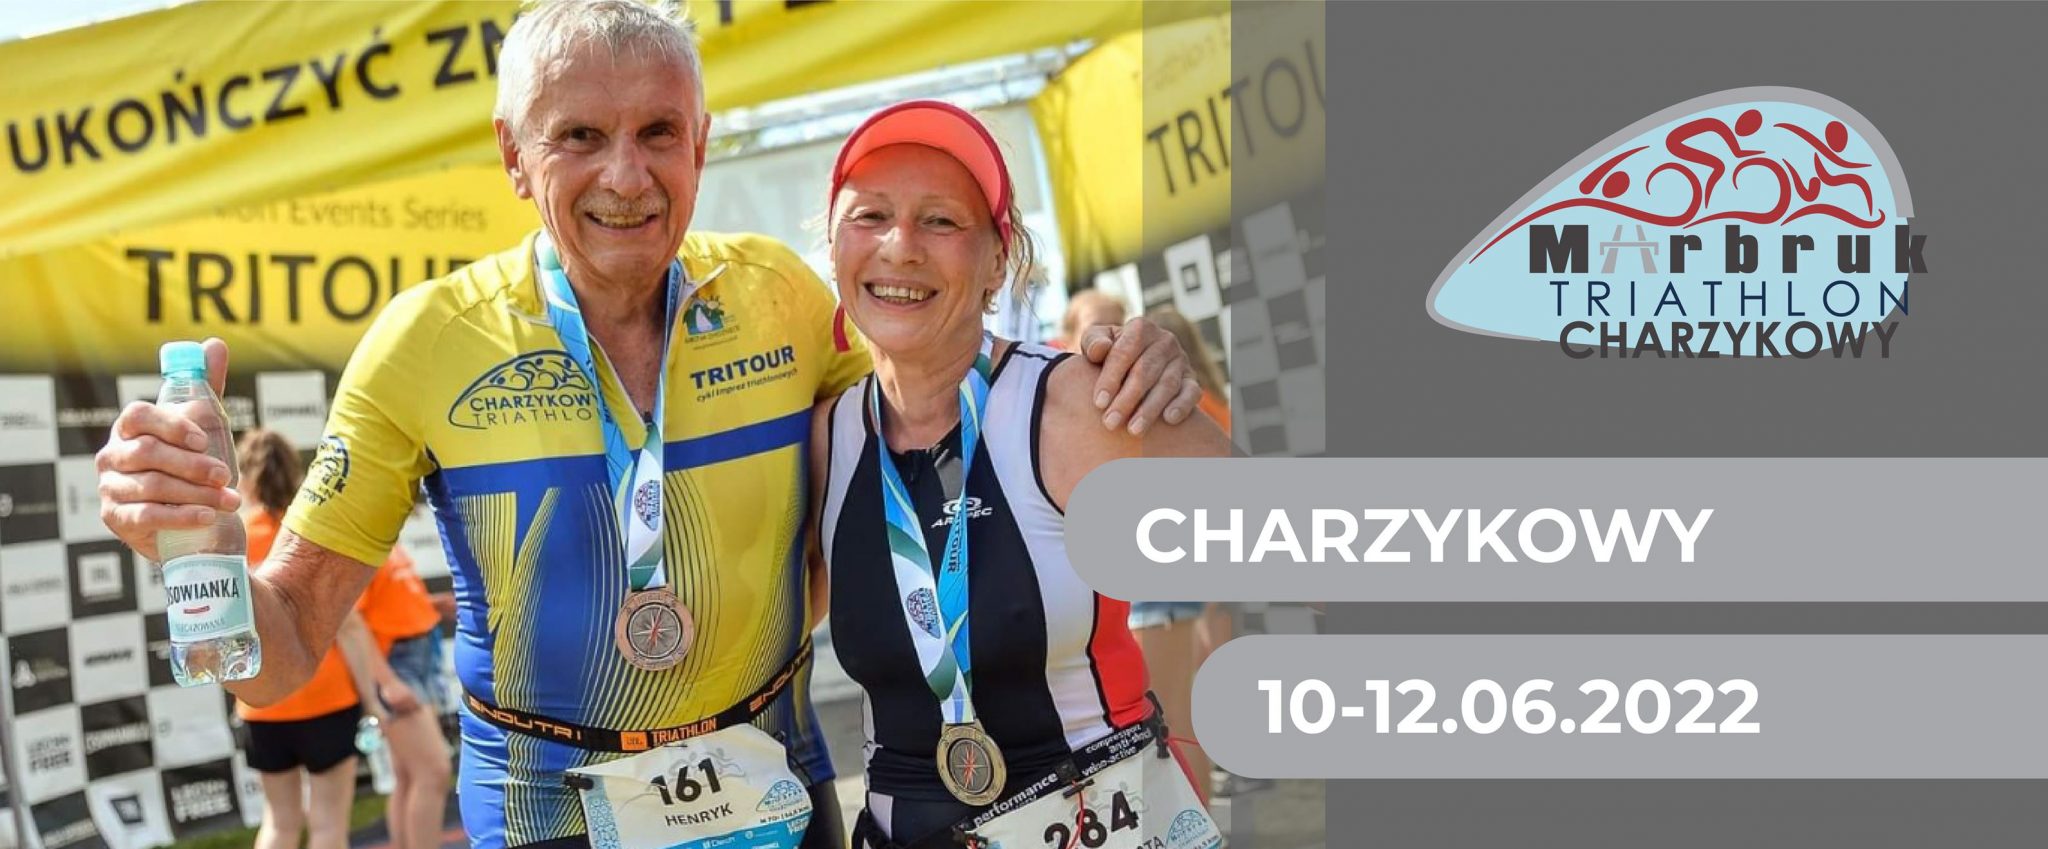 Triathlon Charzykowy 2022 | Aktywer